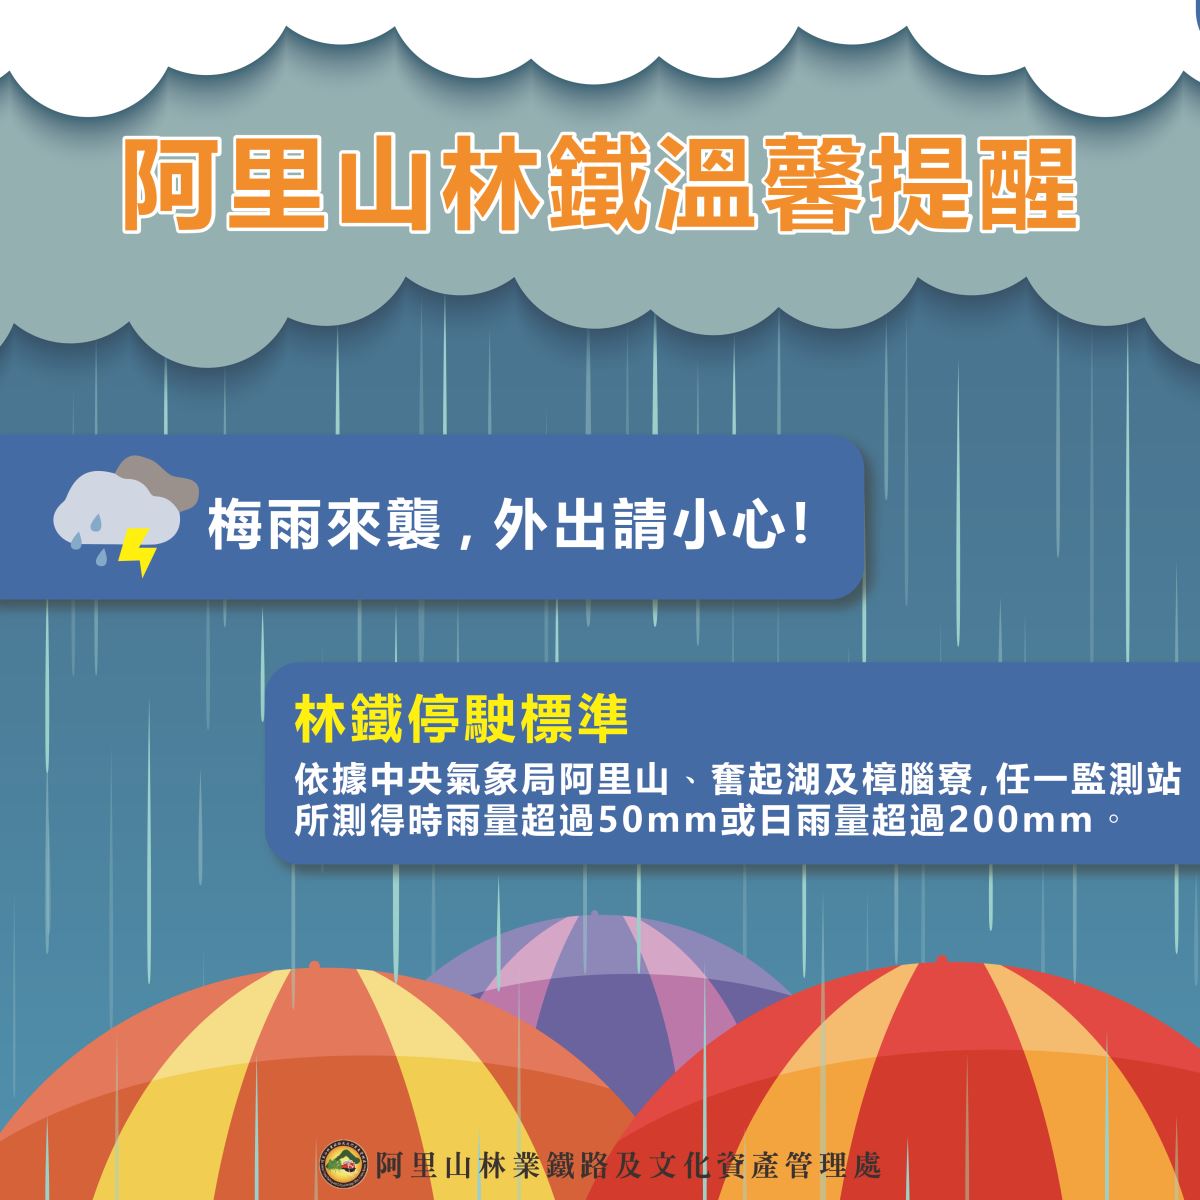 【林鐵溫馨提醒】梅雨來襲，外出請小心!!